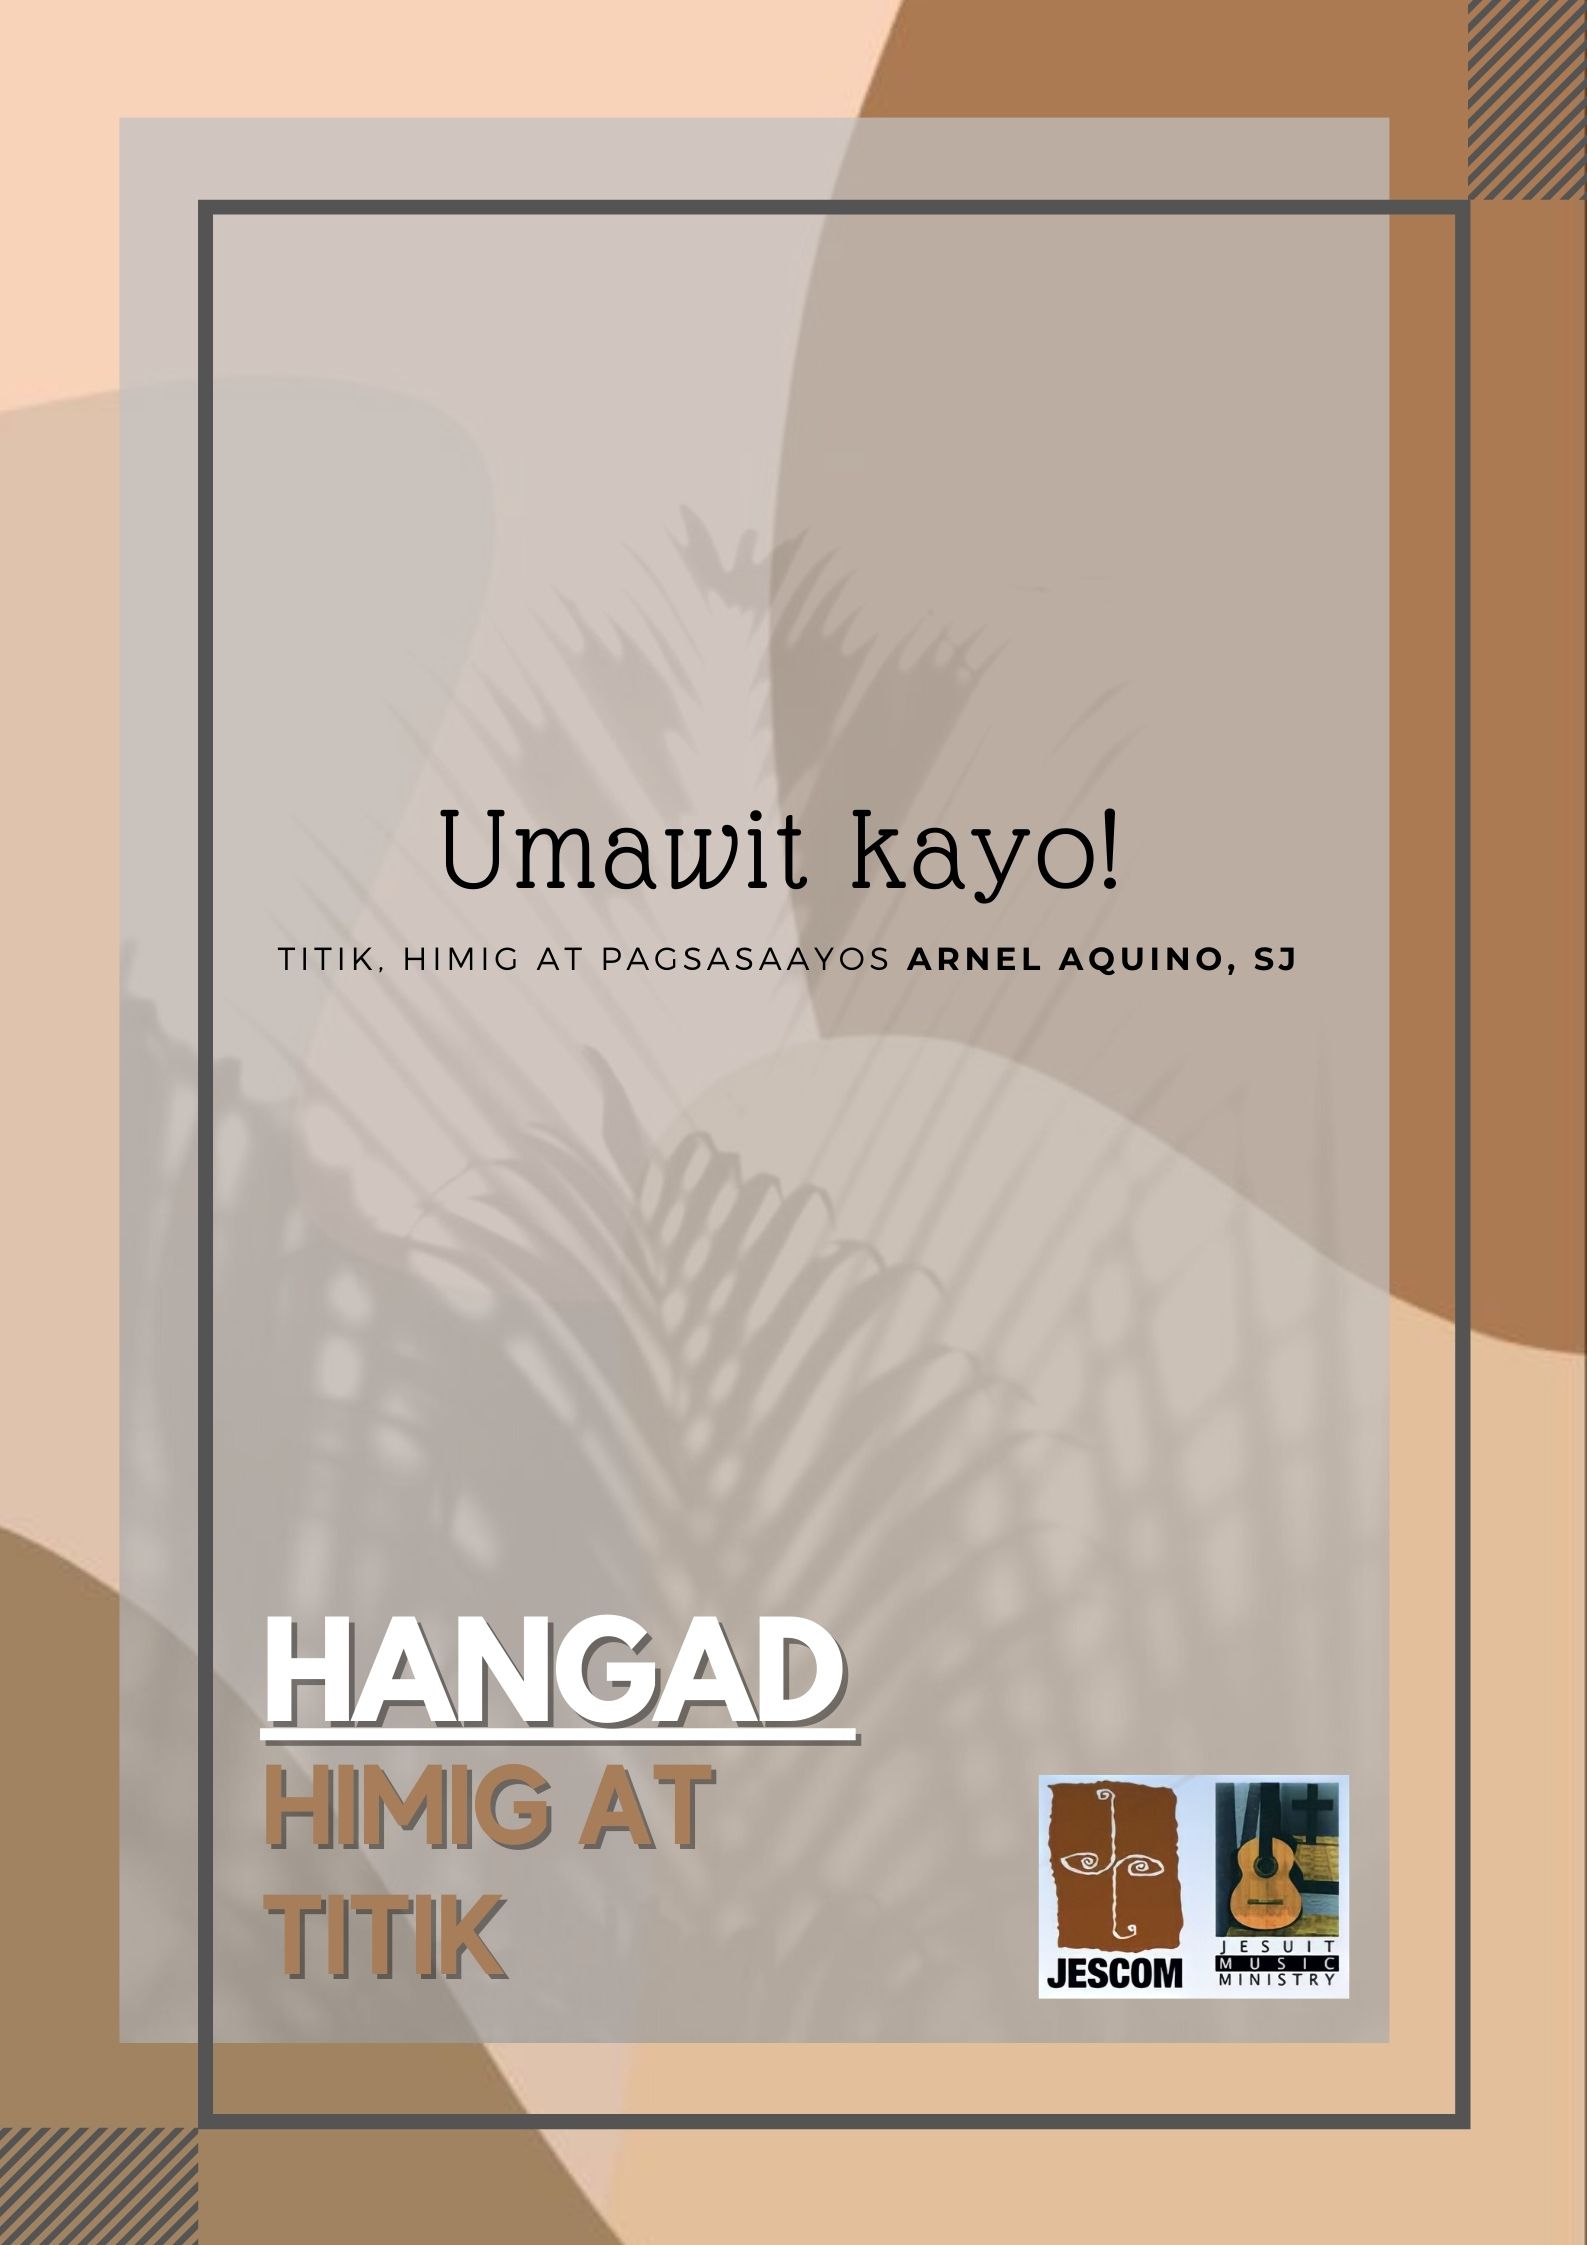 Umawit Kayo — Music Sheet